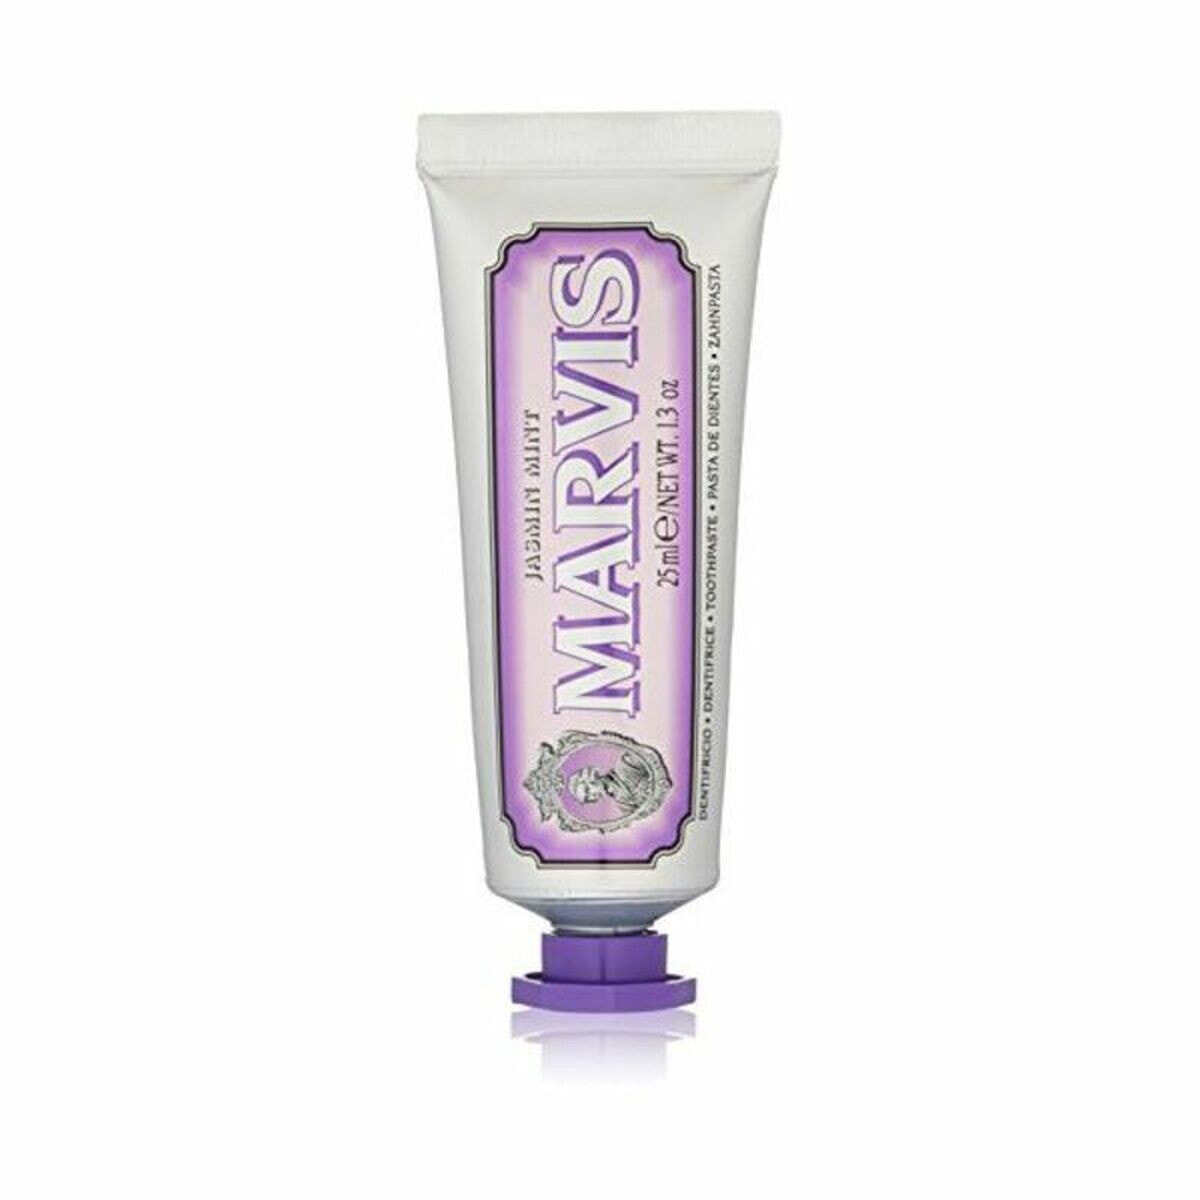 Toothpaste Marvis Jasmin Mint 25 ml